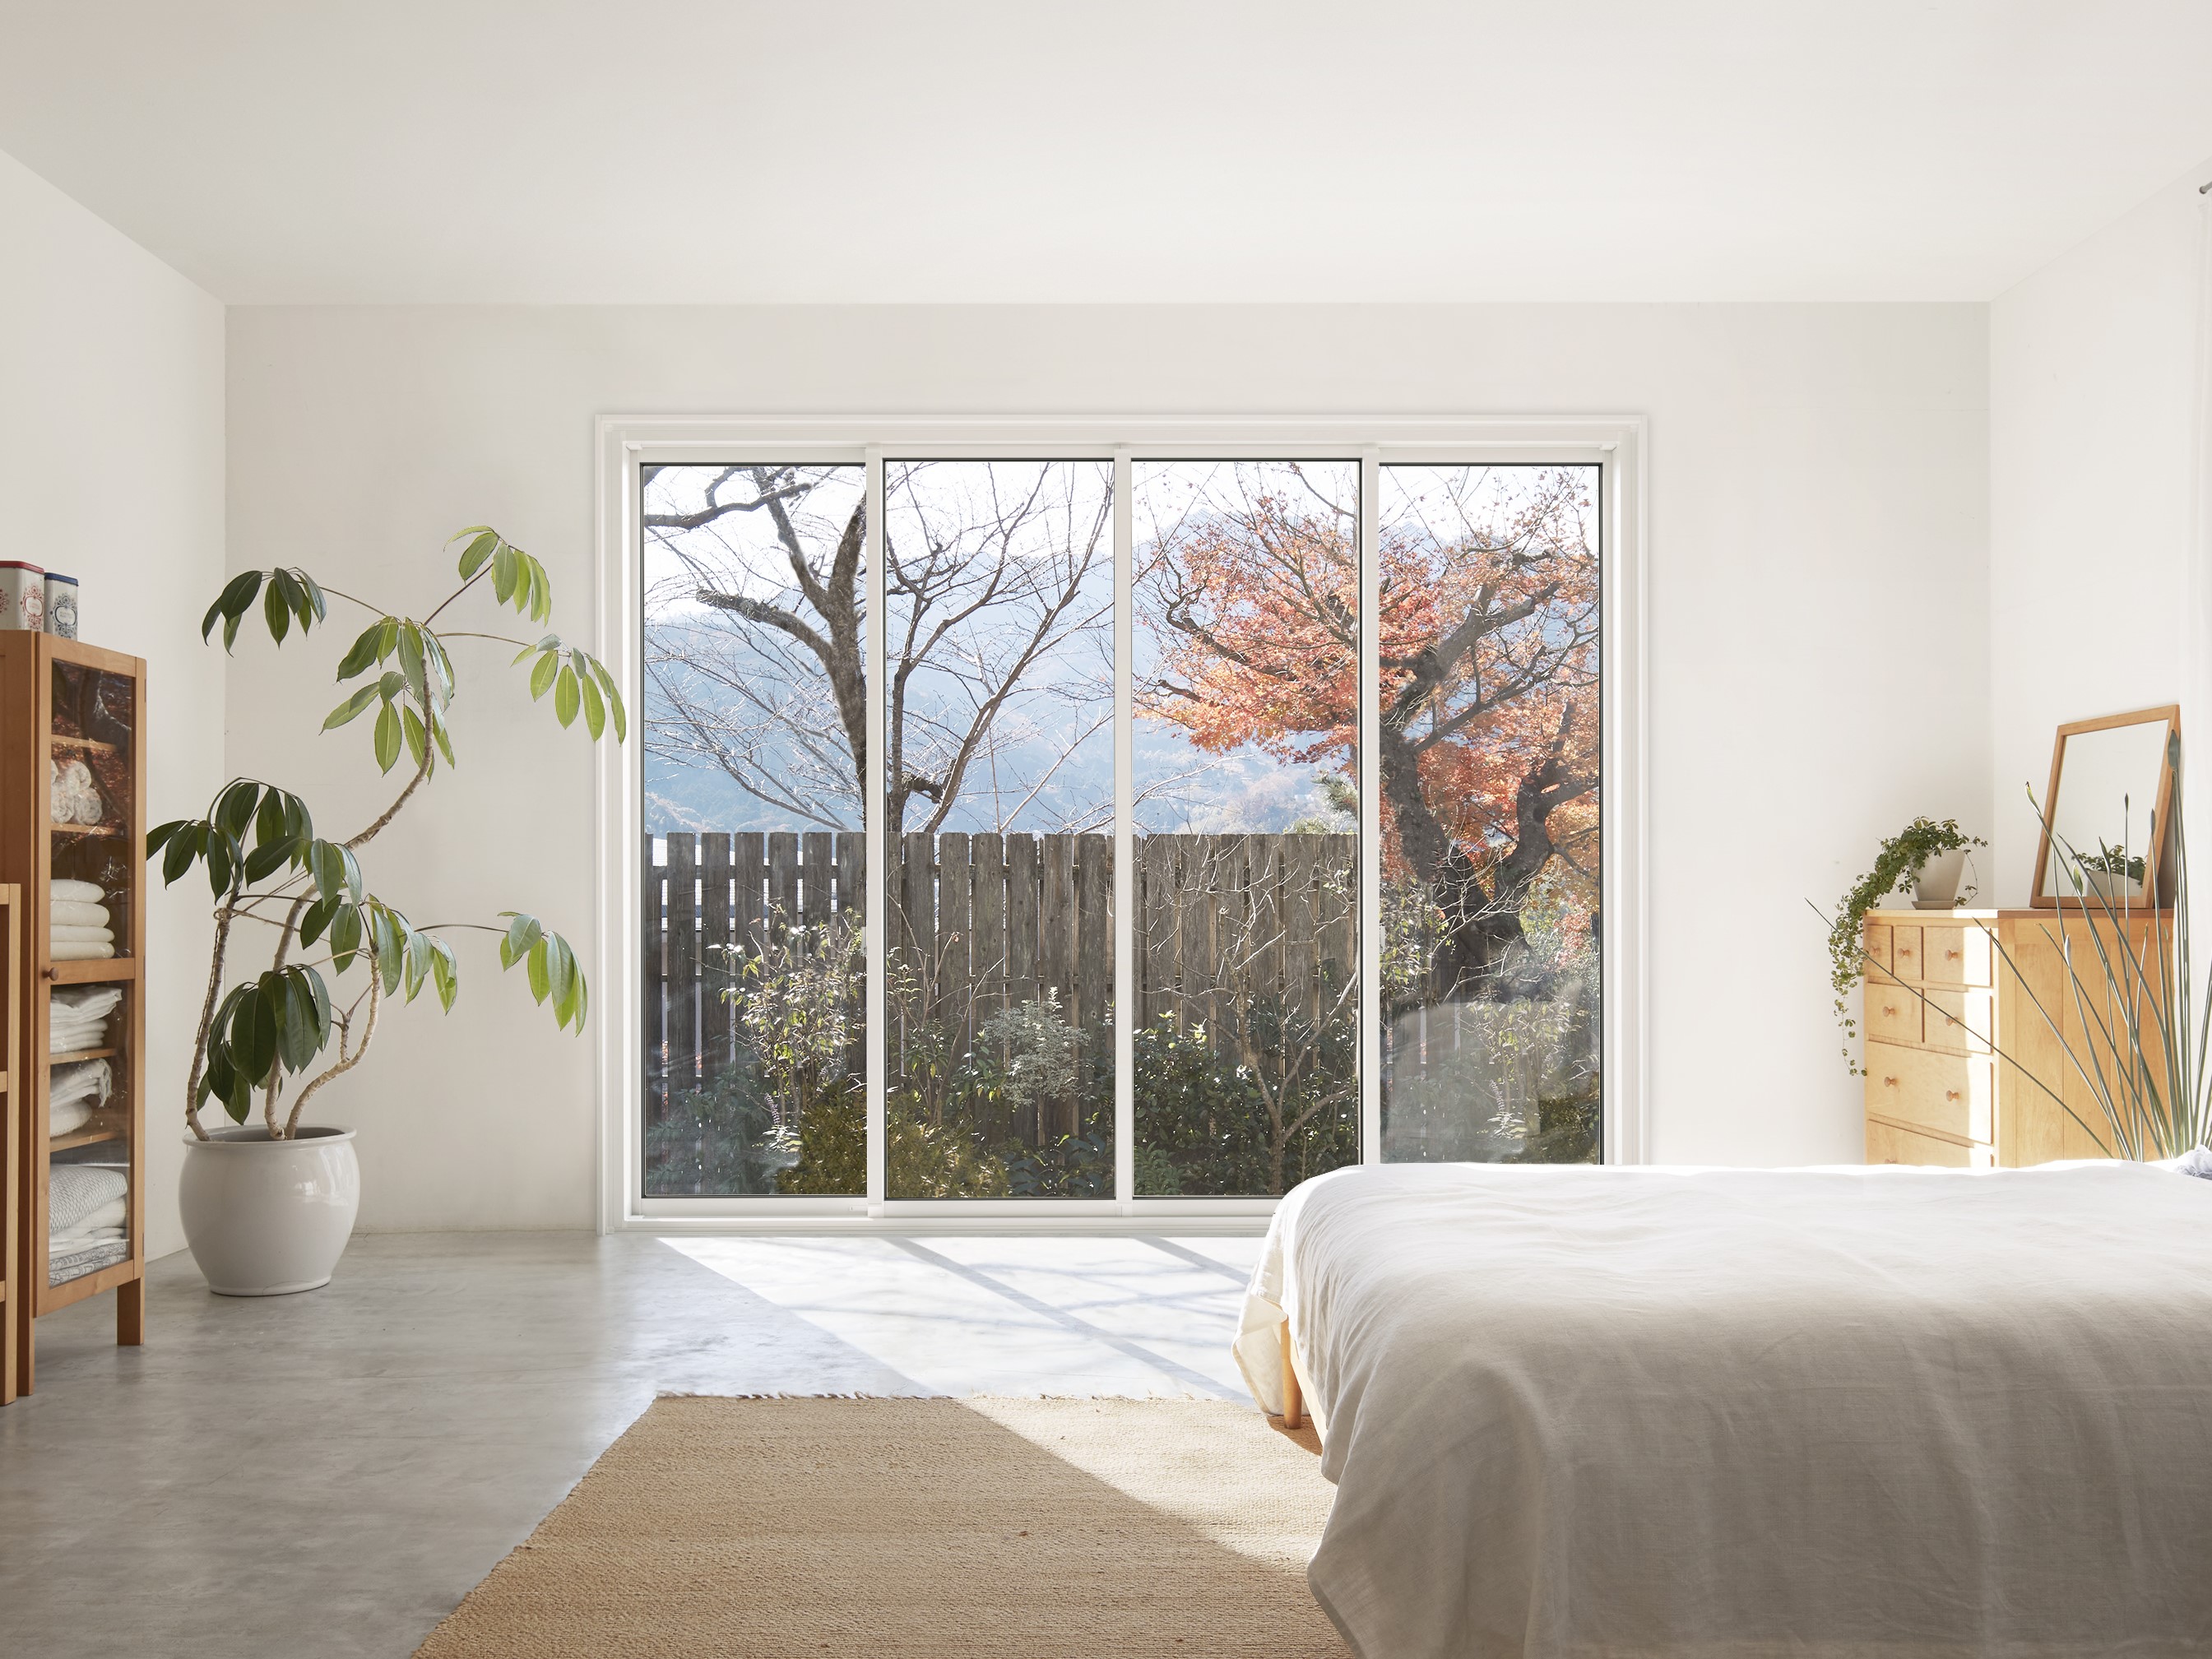 シリーズ最高グレードの断熱性能を実現 取替窓「リプラス」居室仕様TWタイプを追加 サムネイル画像